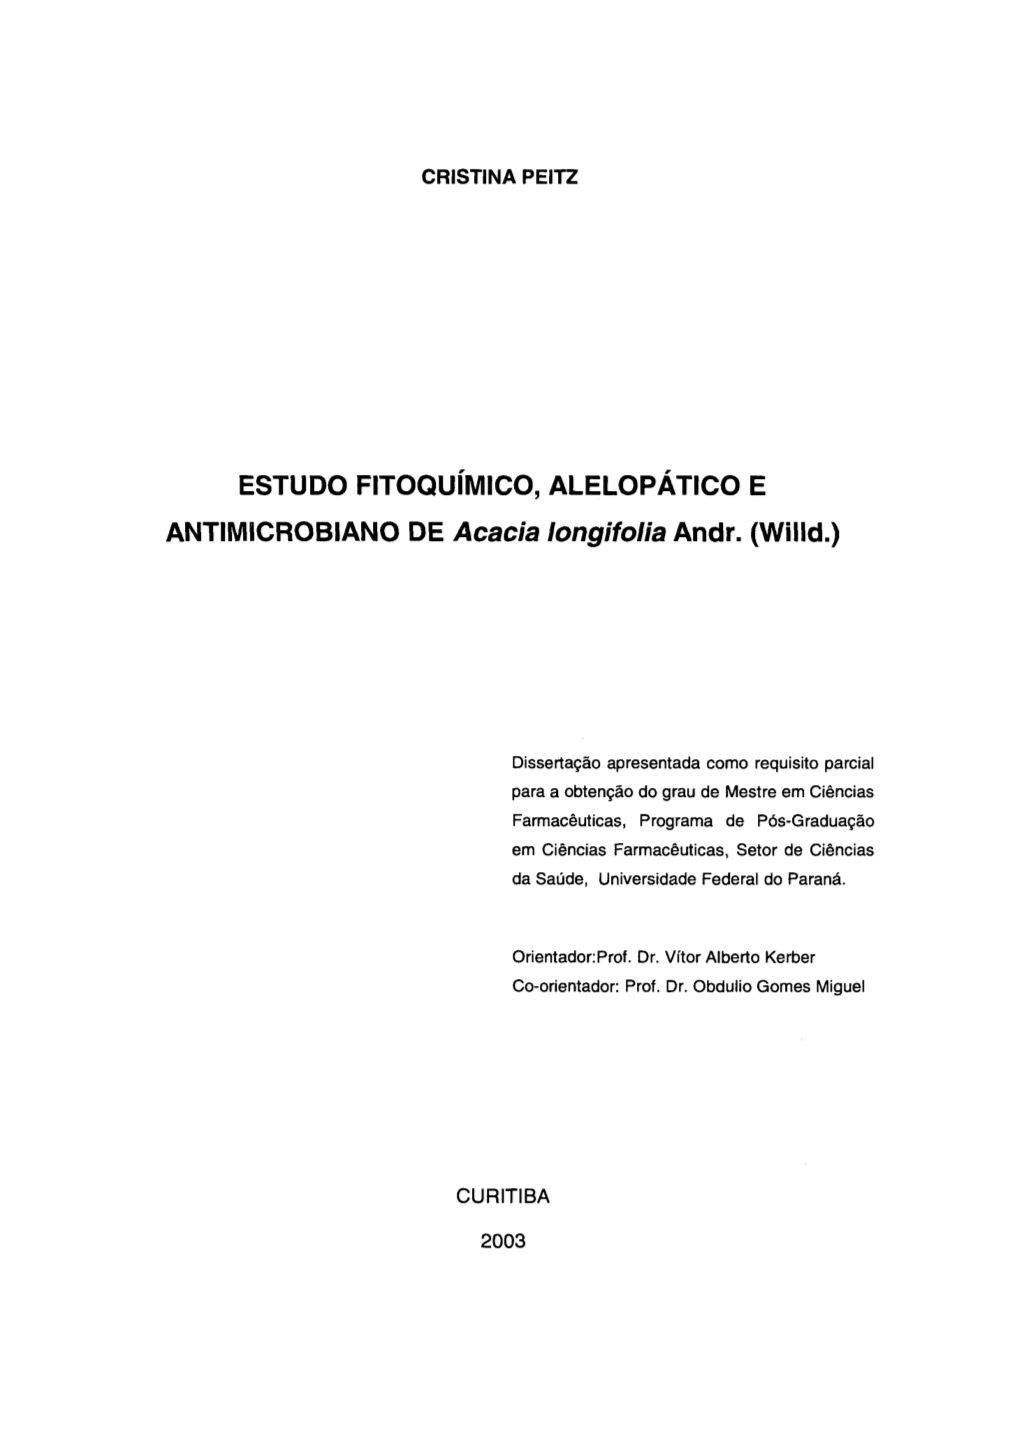 ESTUDO FITOQUÍMICO, ALELOPÁTICO E ANTIMSCROBIANO DE Acacia Longifolia Andr. (Willd.)